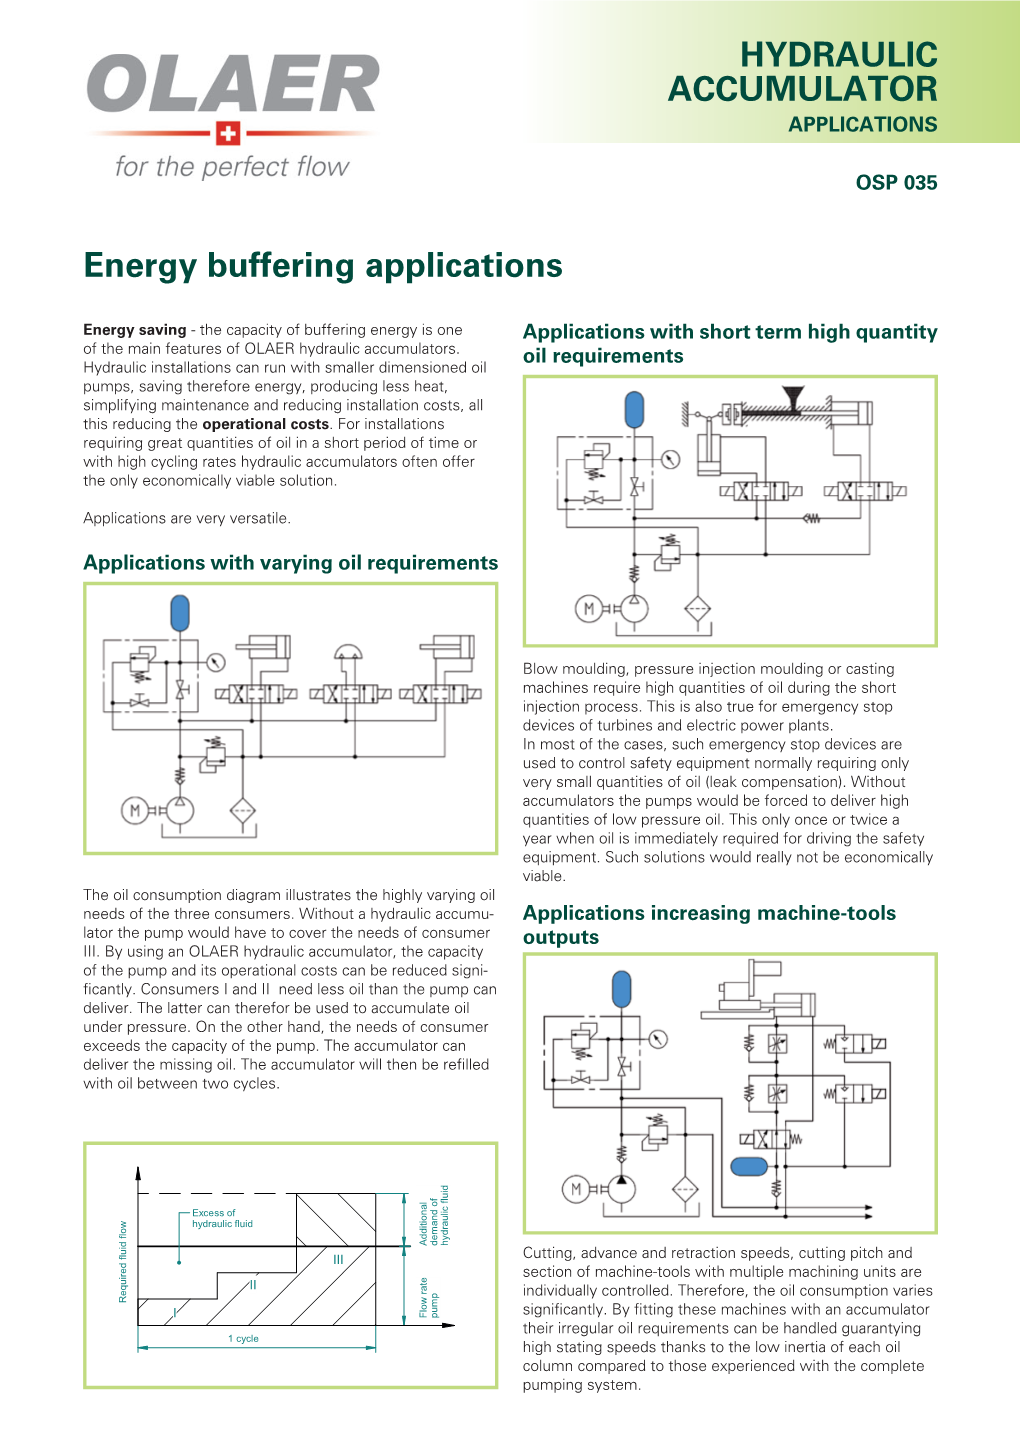 HYDRAULIC ACCUMULATOR Energy Buffering Applications